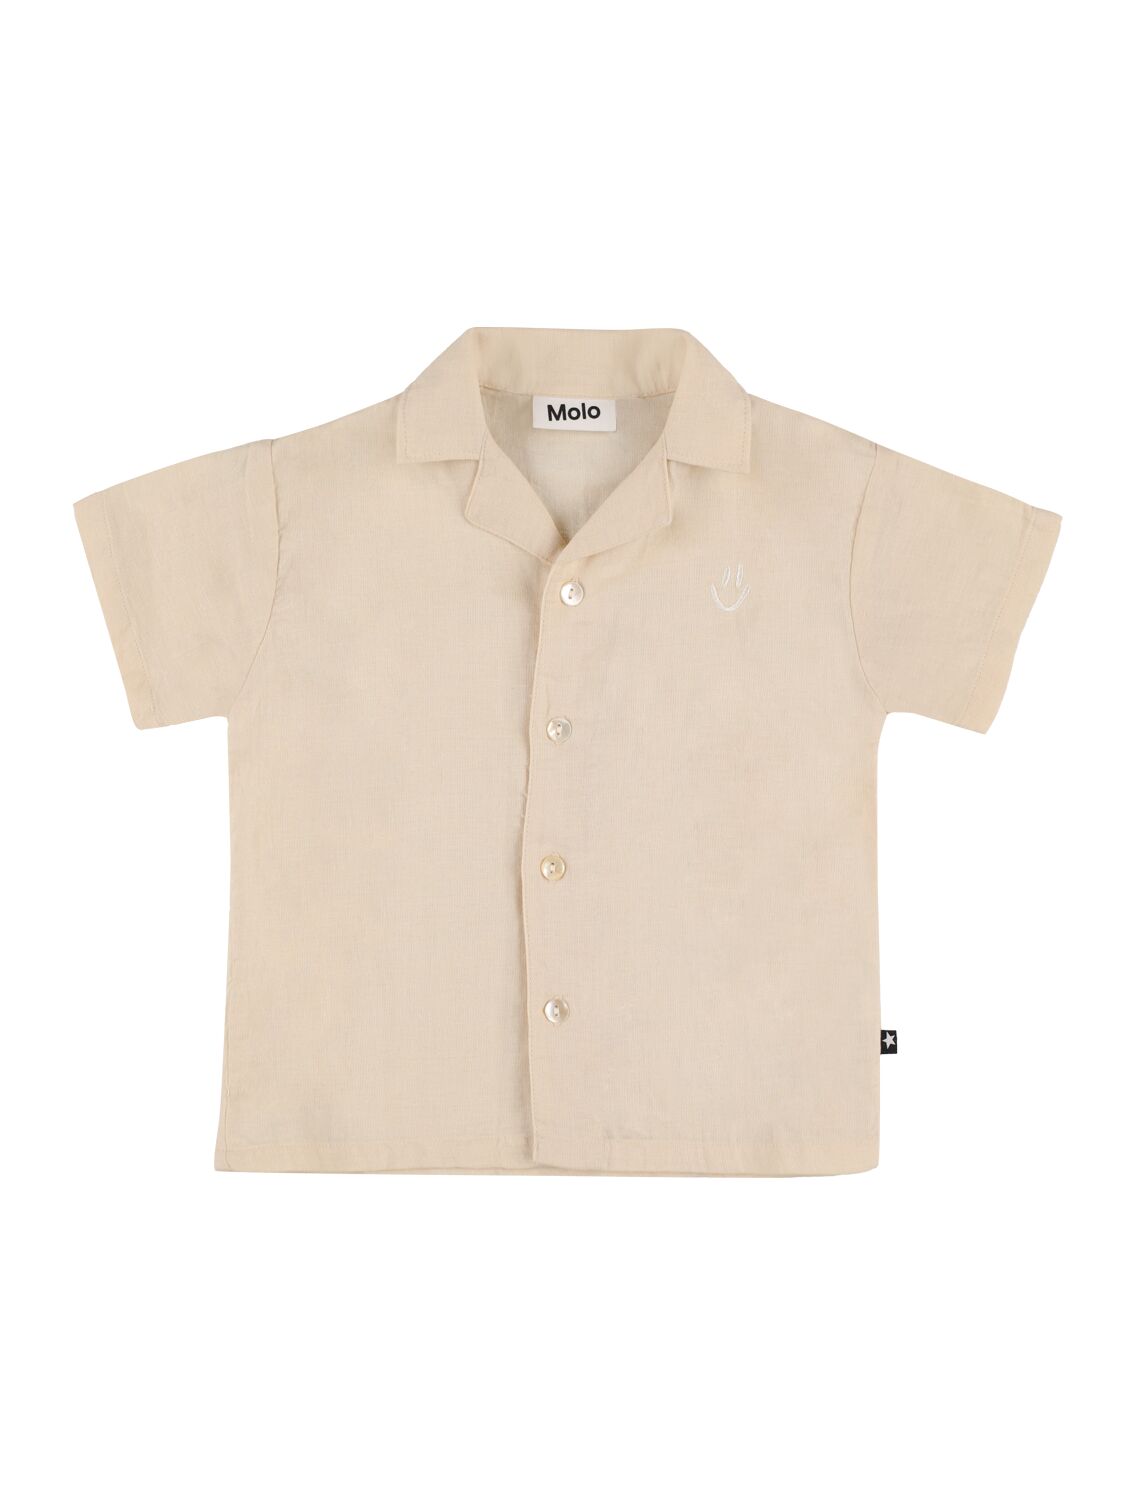 Molo Kids' Cotton & Linen Short Sleeve Shirt In Light Beige